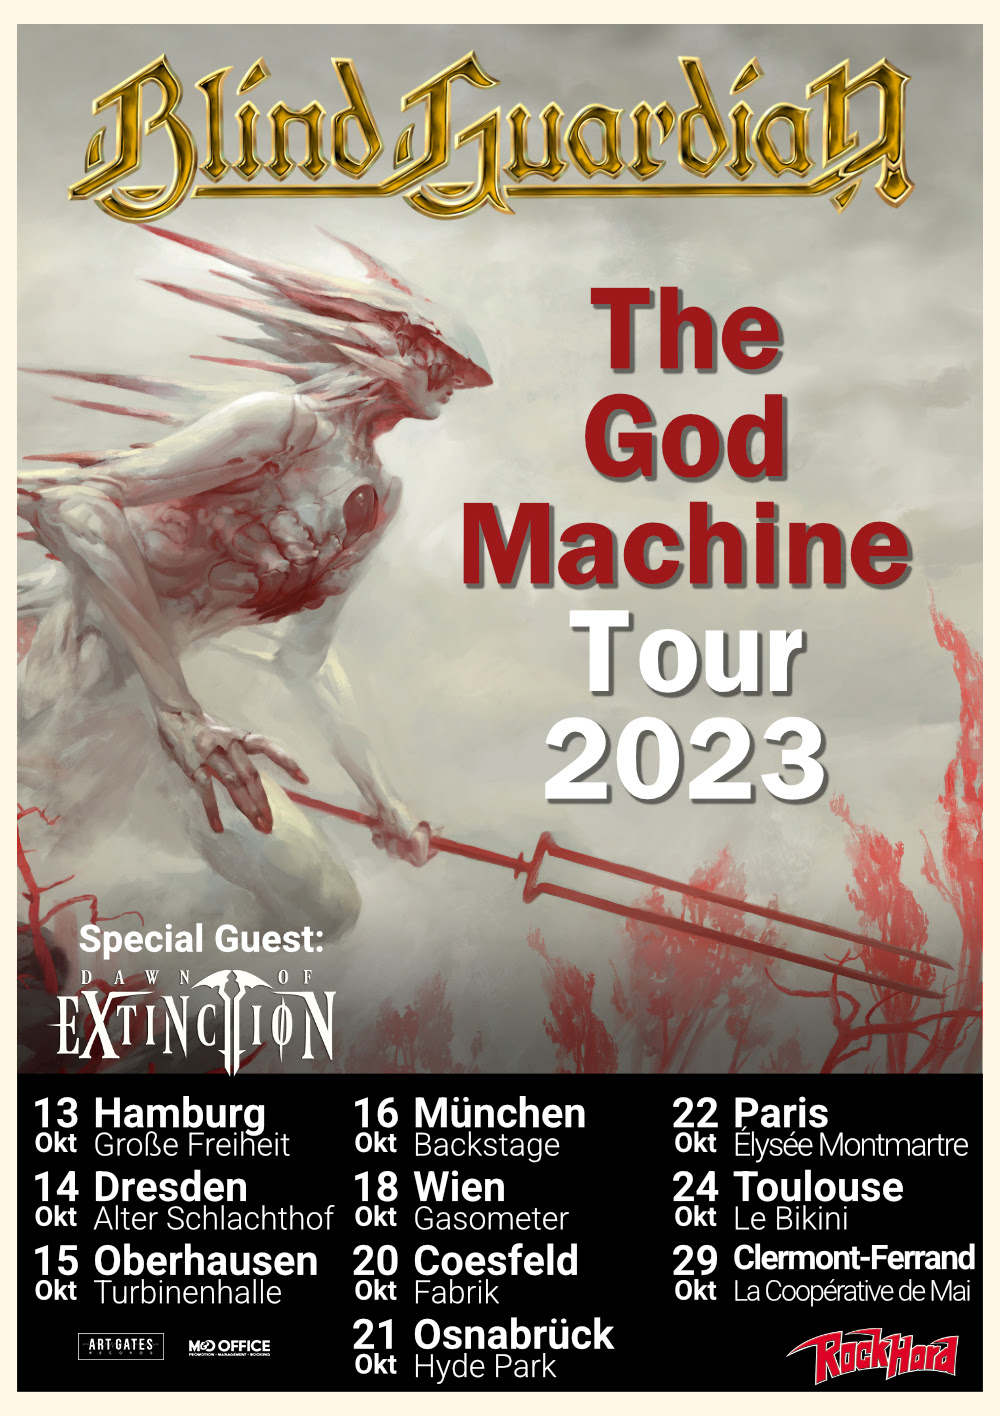 Dawn Of Extinction estarán de gira por Europa junto a Blind Guardian